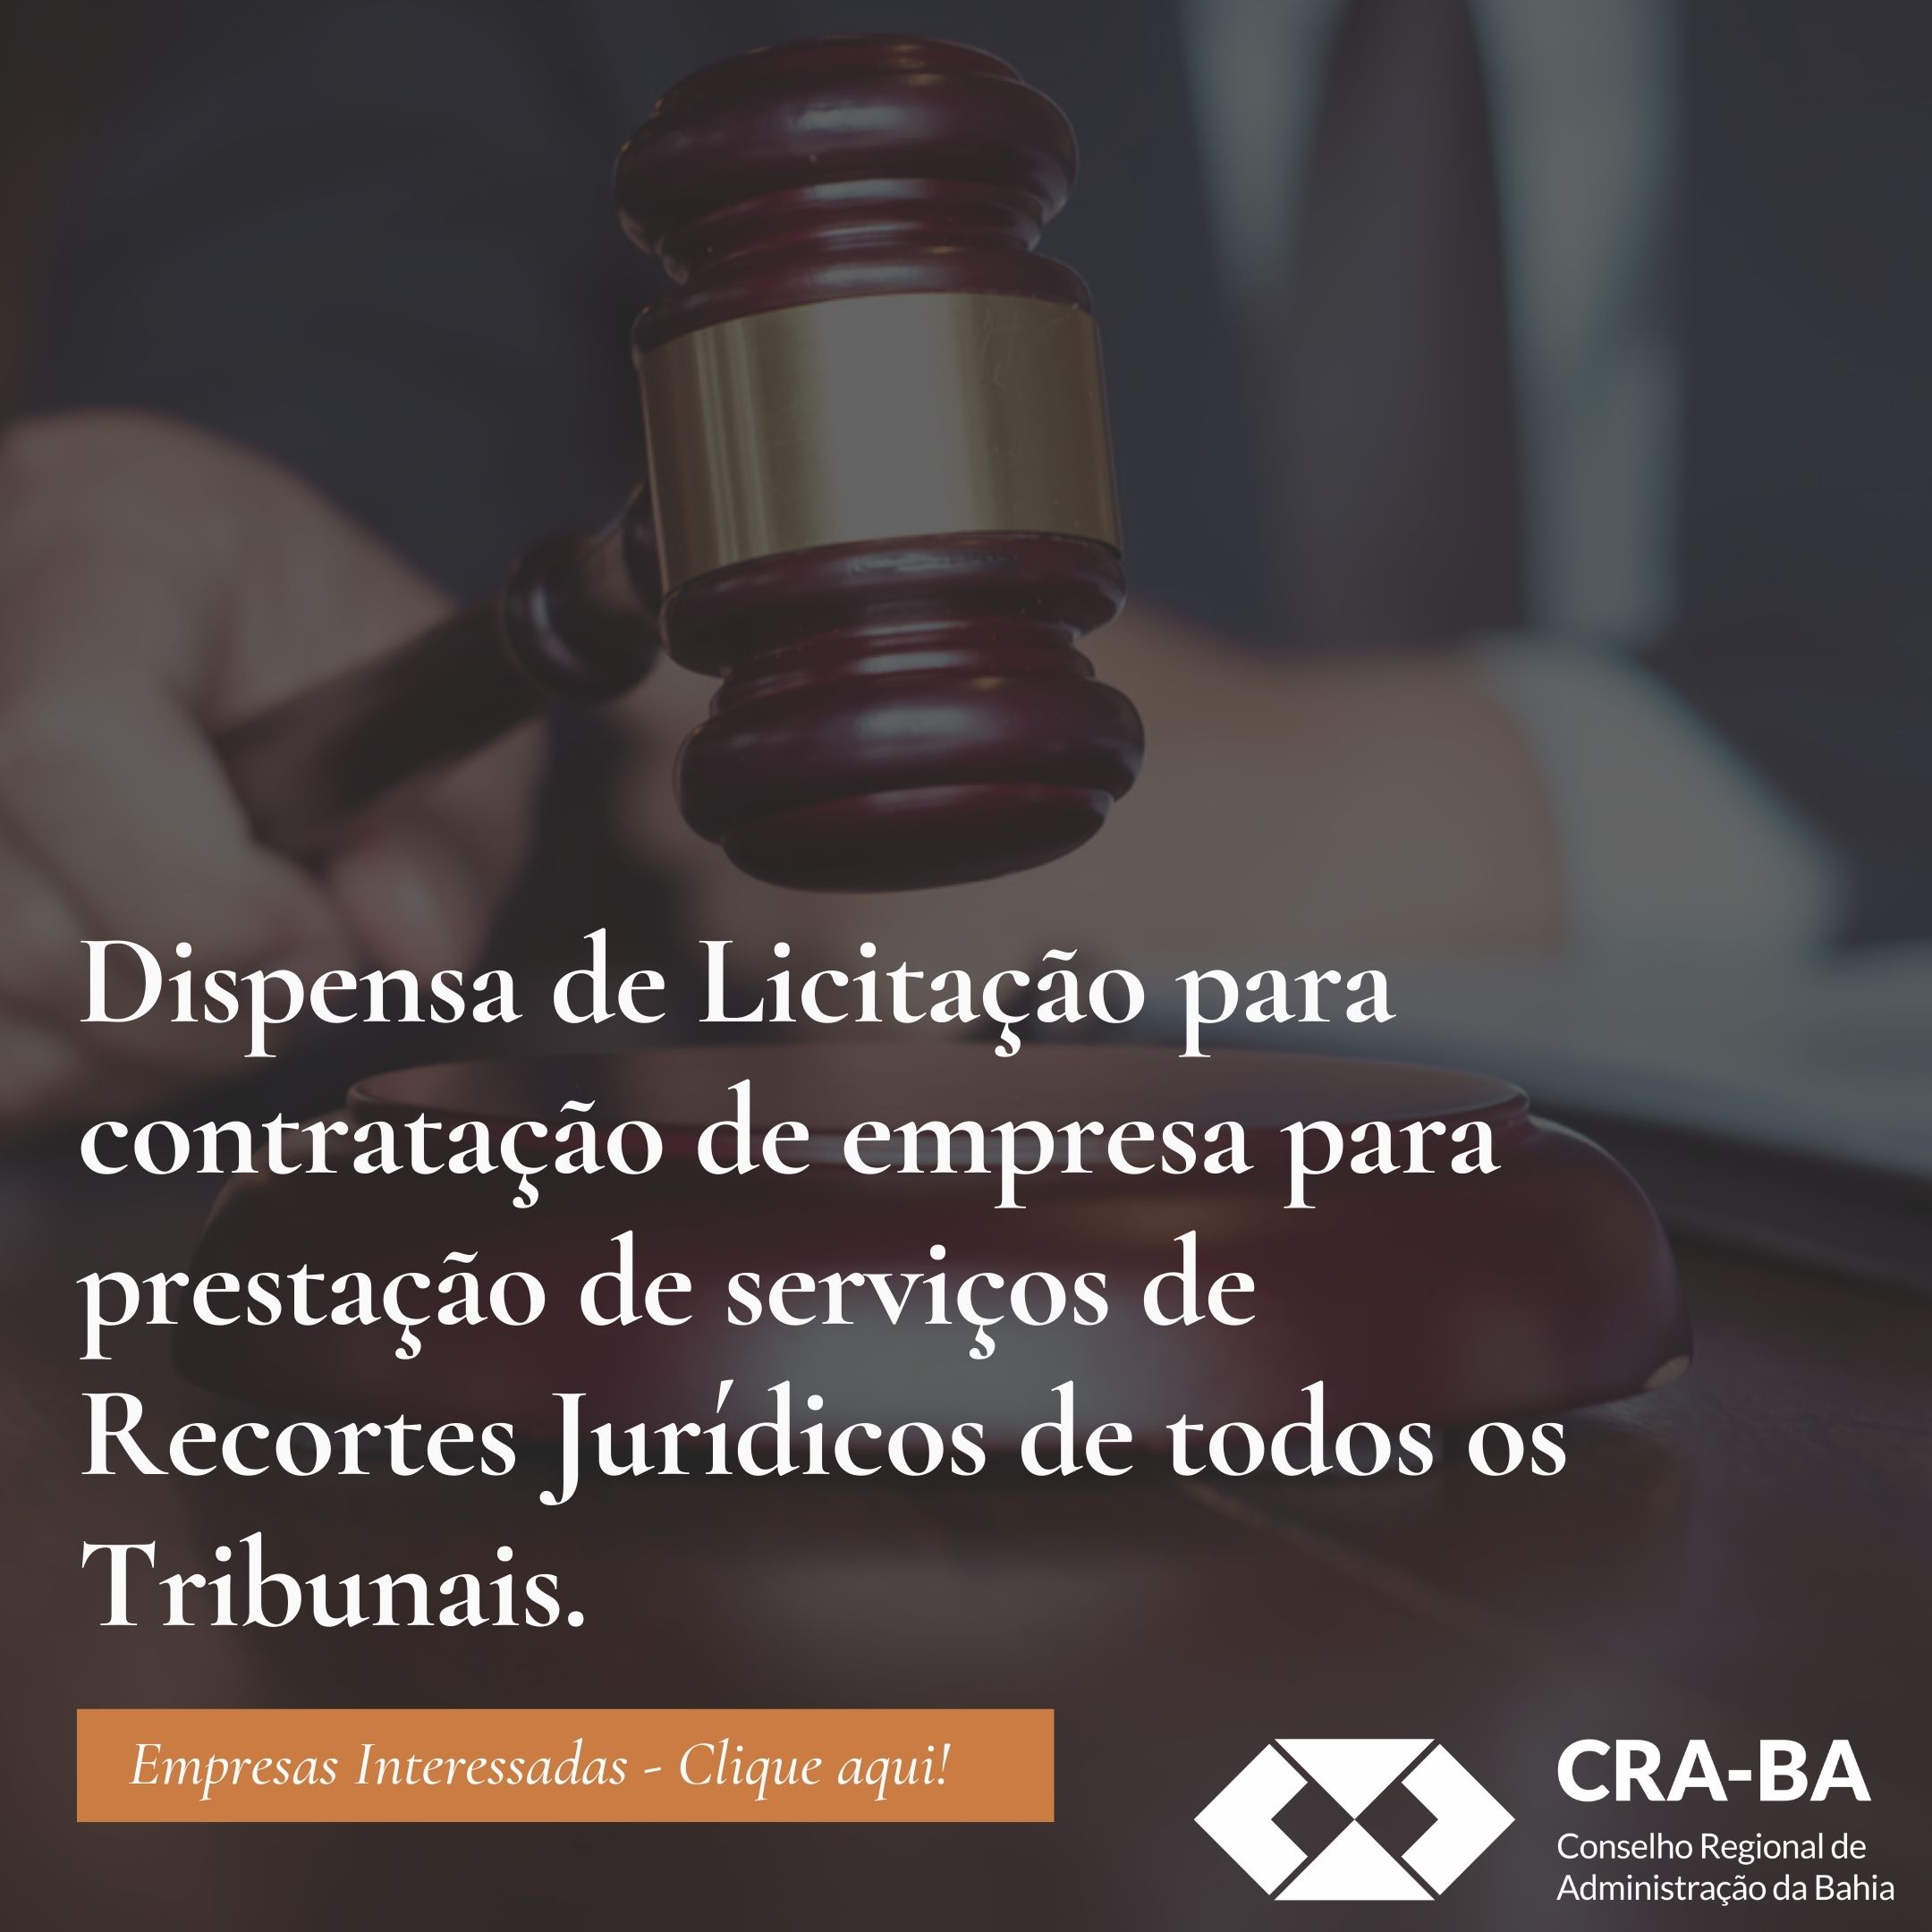 You are currently viewing Dispensa de Licitação para contratação de empresa para prestação de serviços de Recortes Jurídicos de todos os Tribunais.